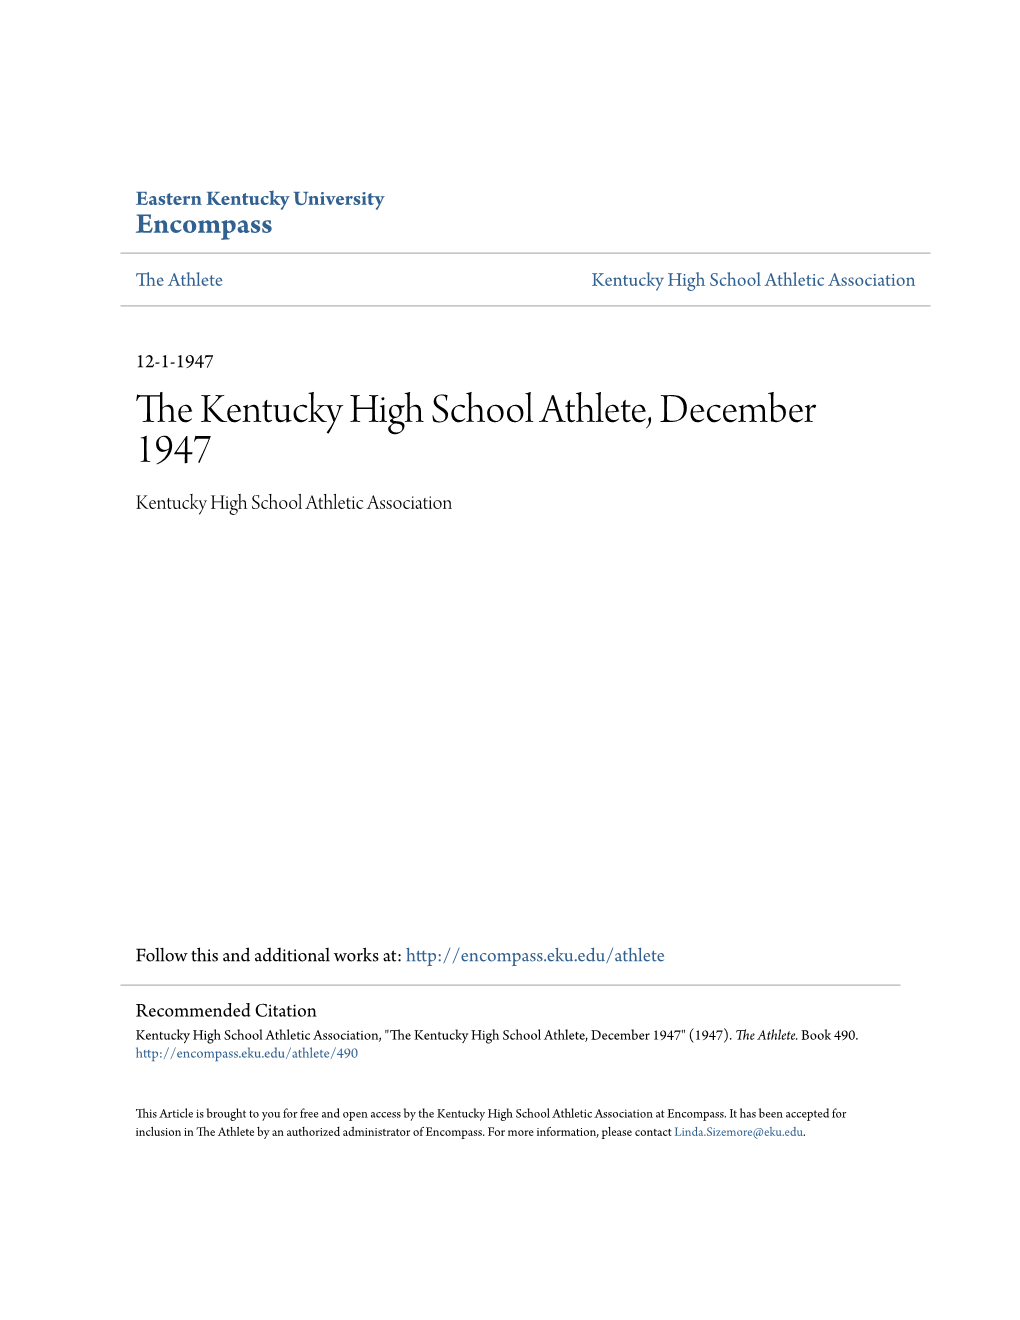 The Kentucky High School Athlete, December 1947 Kentucky High School Athletic Association